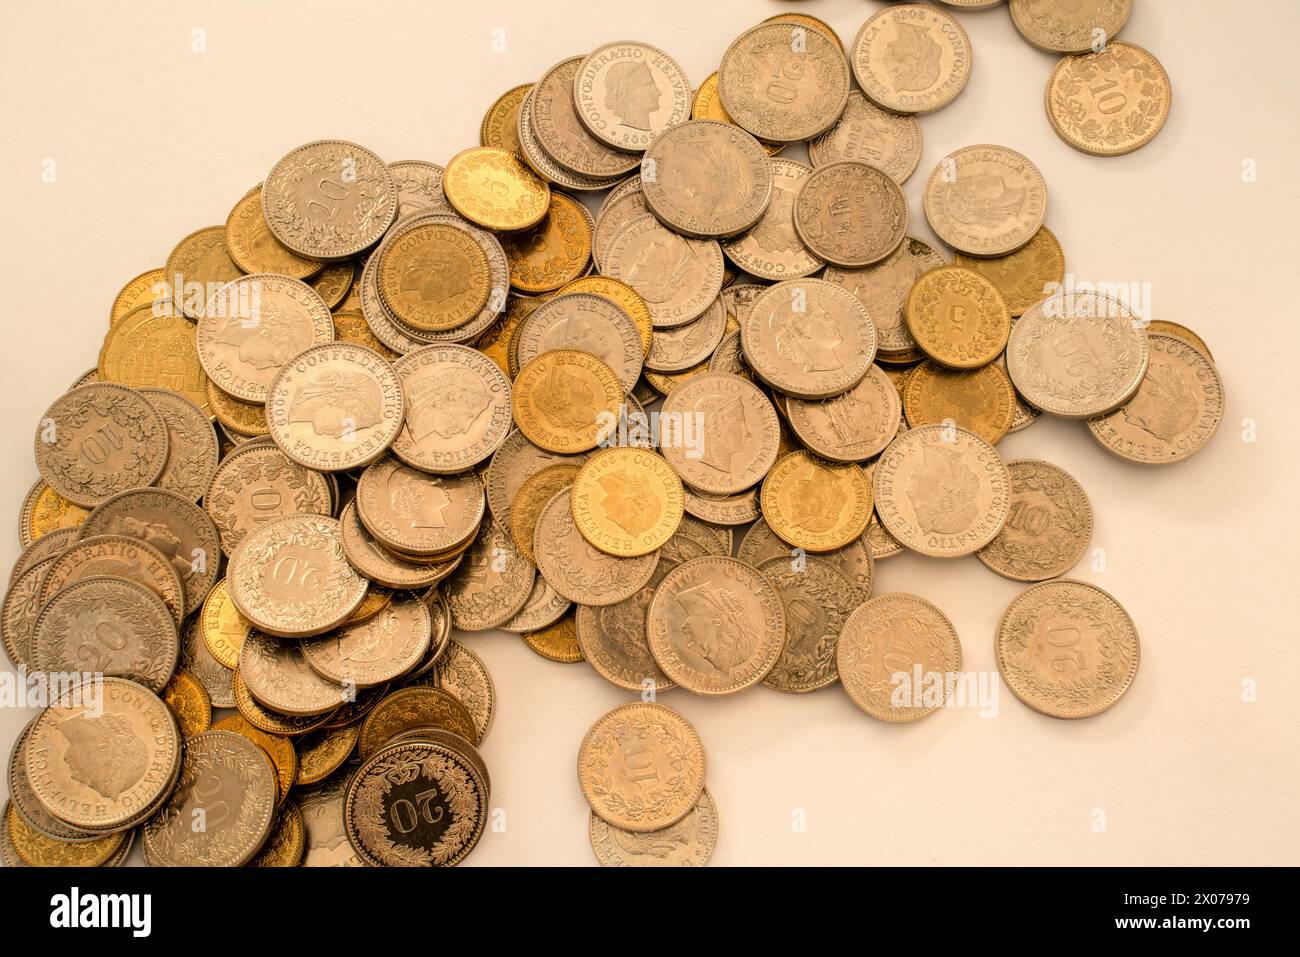 Pile di monete di diverse dimensioni stese sul tavolo prima di essere contate. Soldi svizzeri. Foto Stock